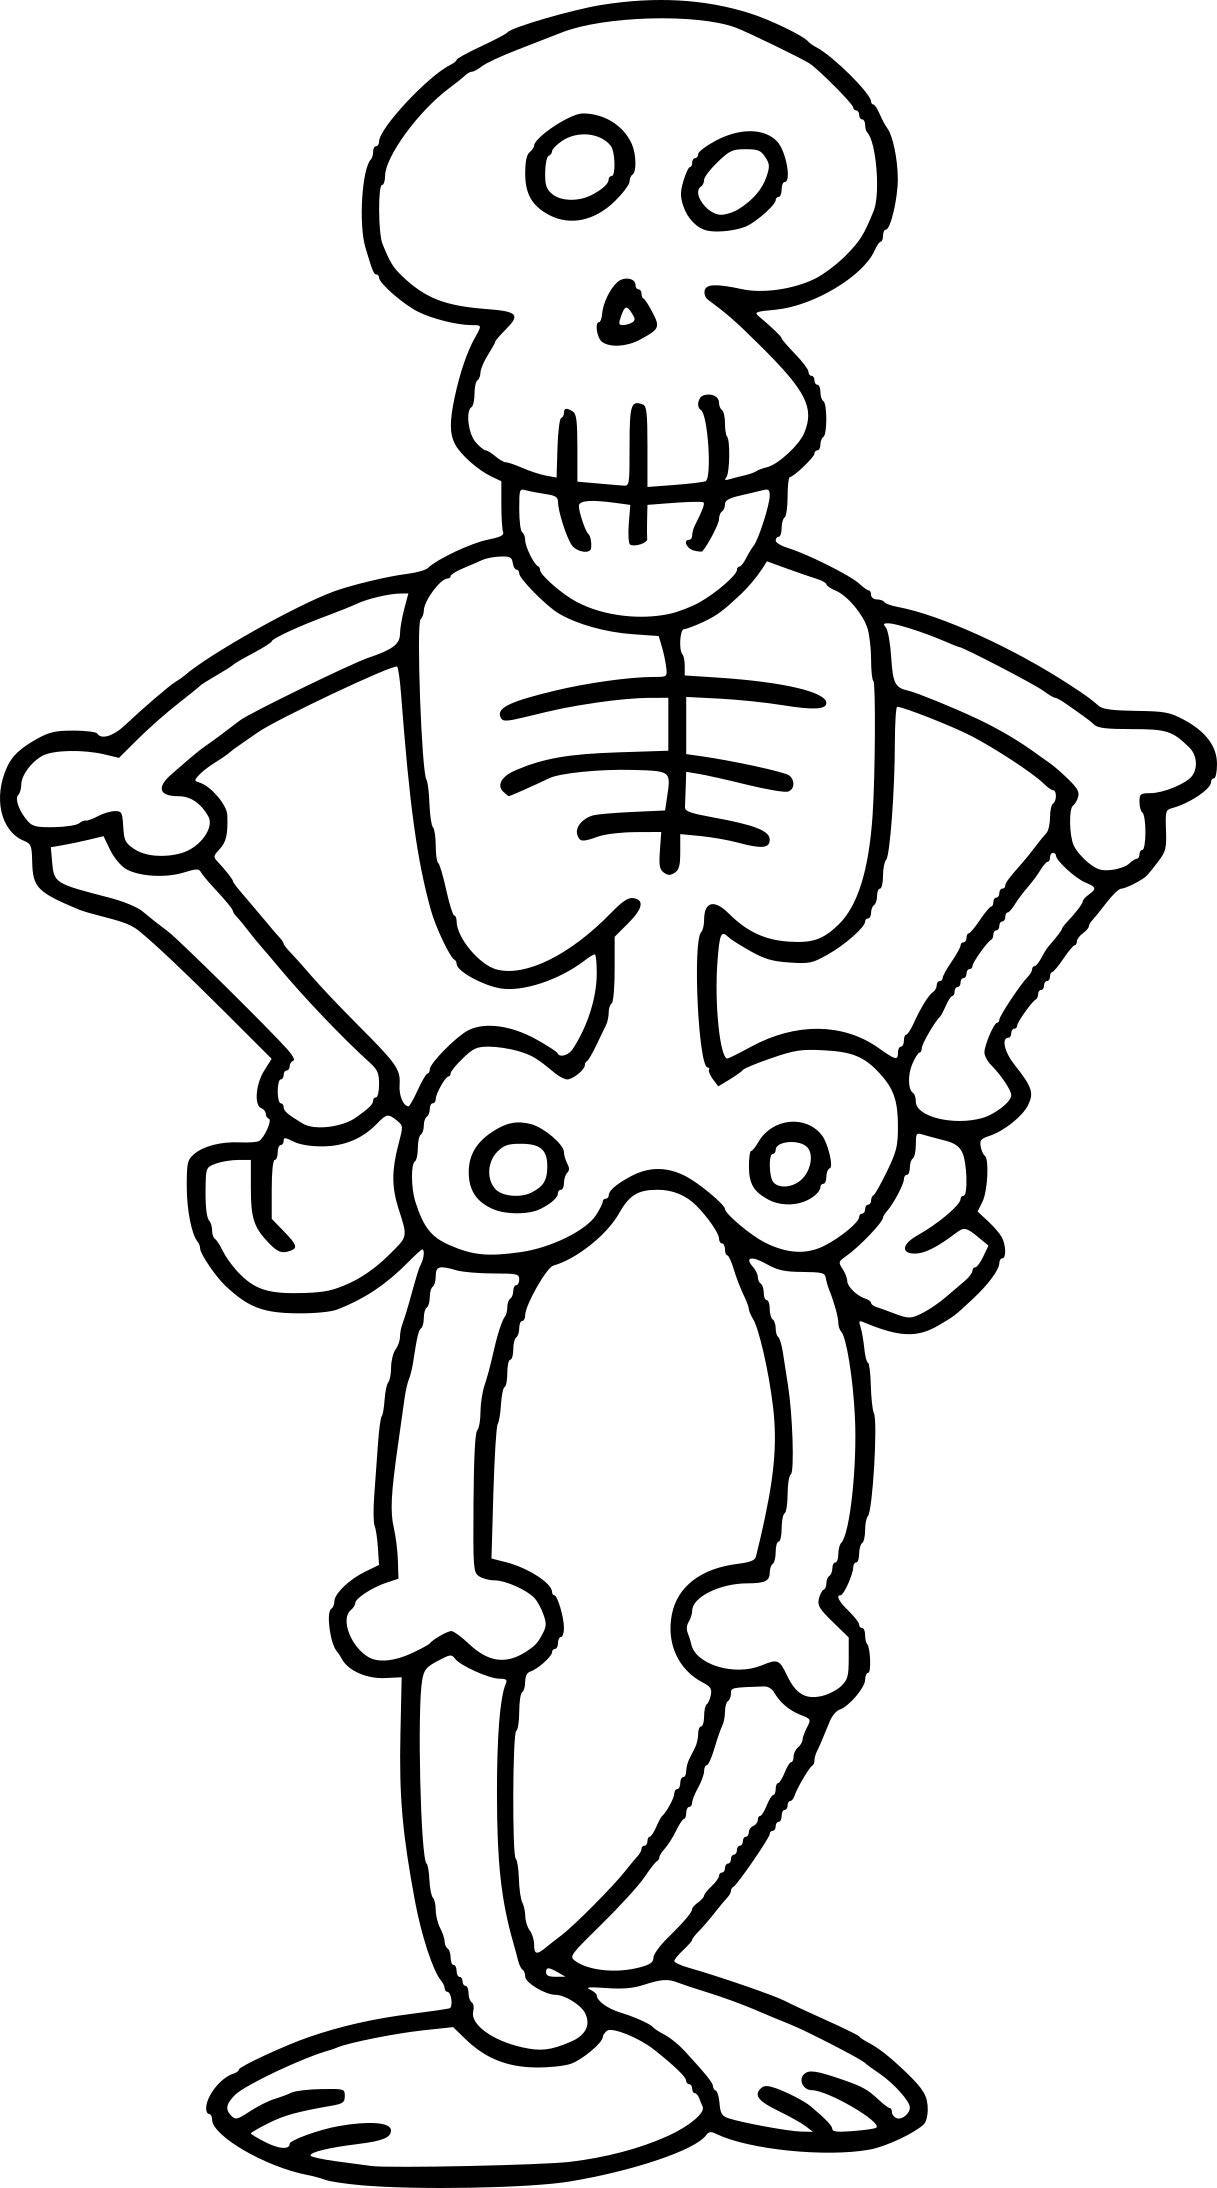 Coloriage Squelette À Imprimer avec Squelette A Imprimer